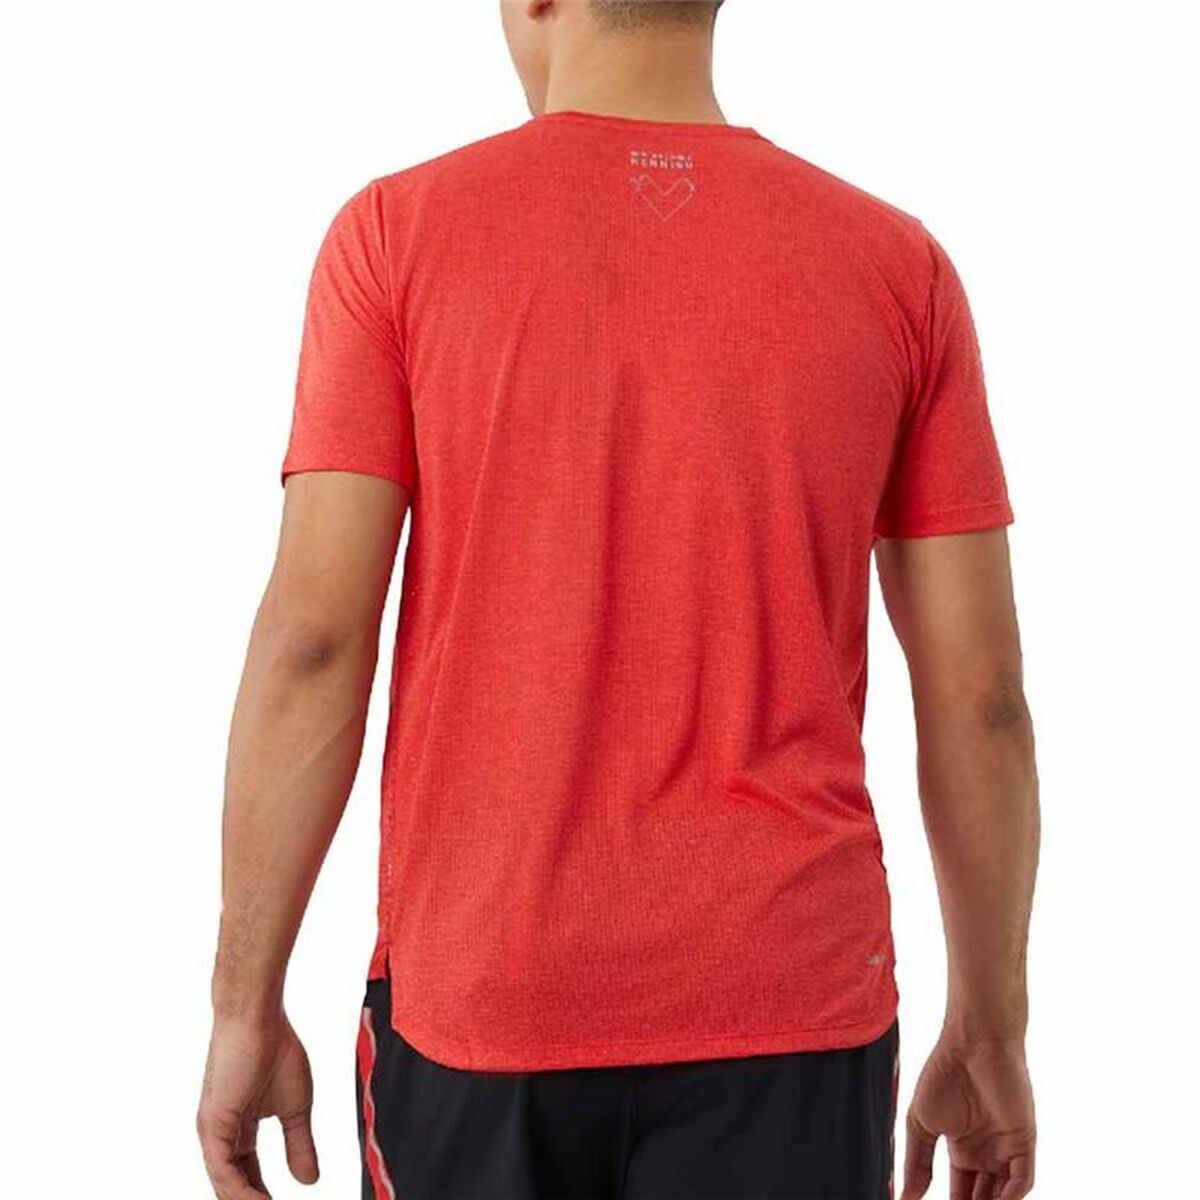 Kaufe Kurzärmliges Sport T-Shirt New Balance Impact Run Orange bei AWK Flagship um € 51.00